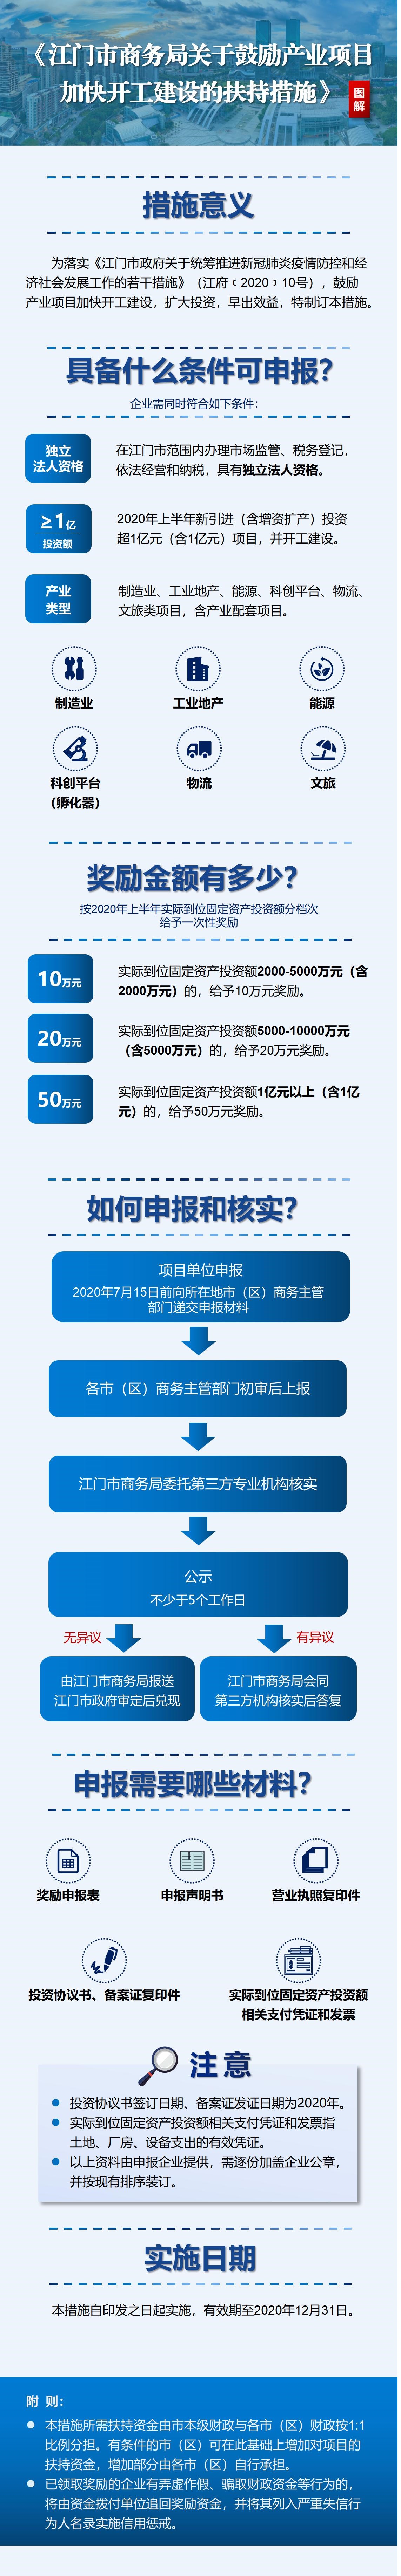 江商务资服2020020号附件7——扶持措施图解.jpg